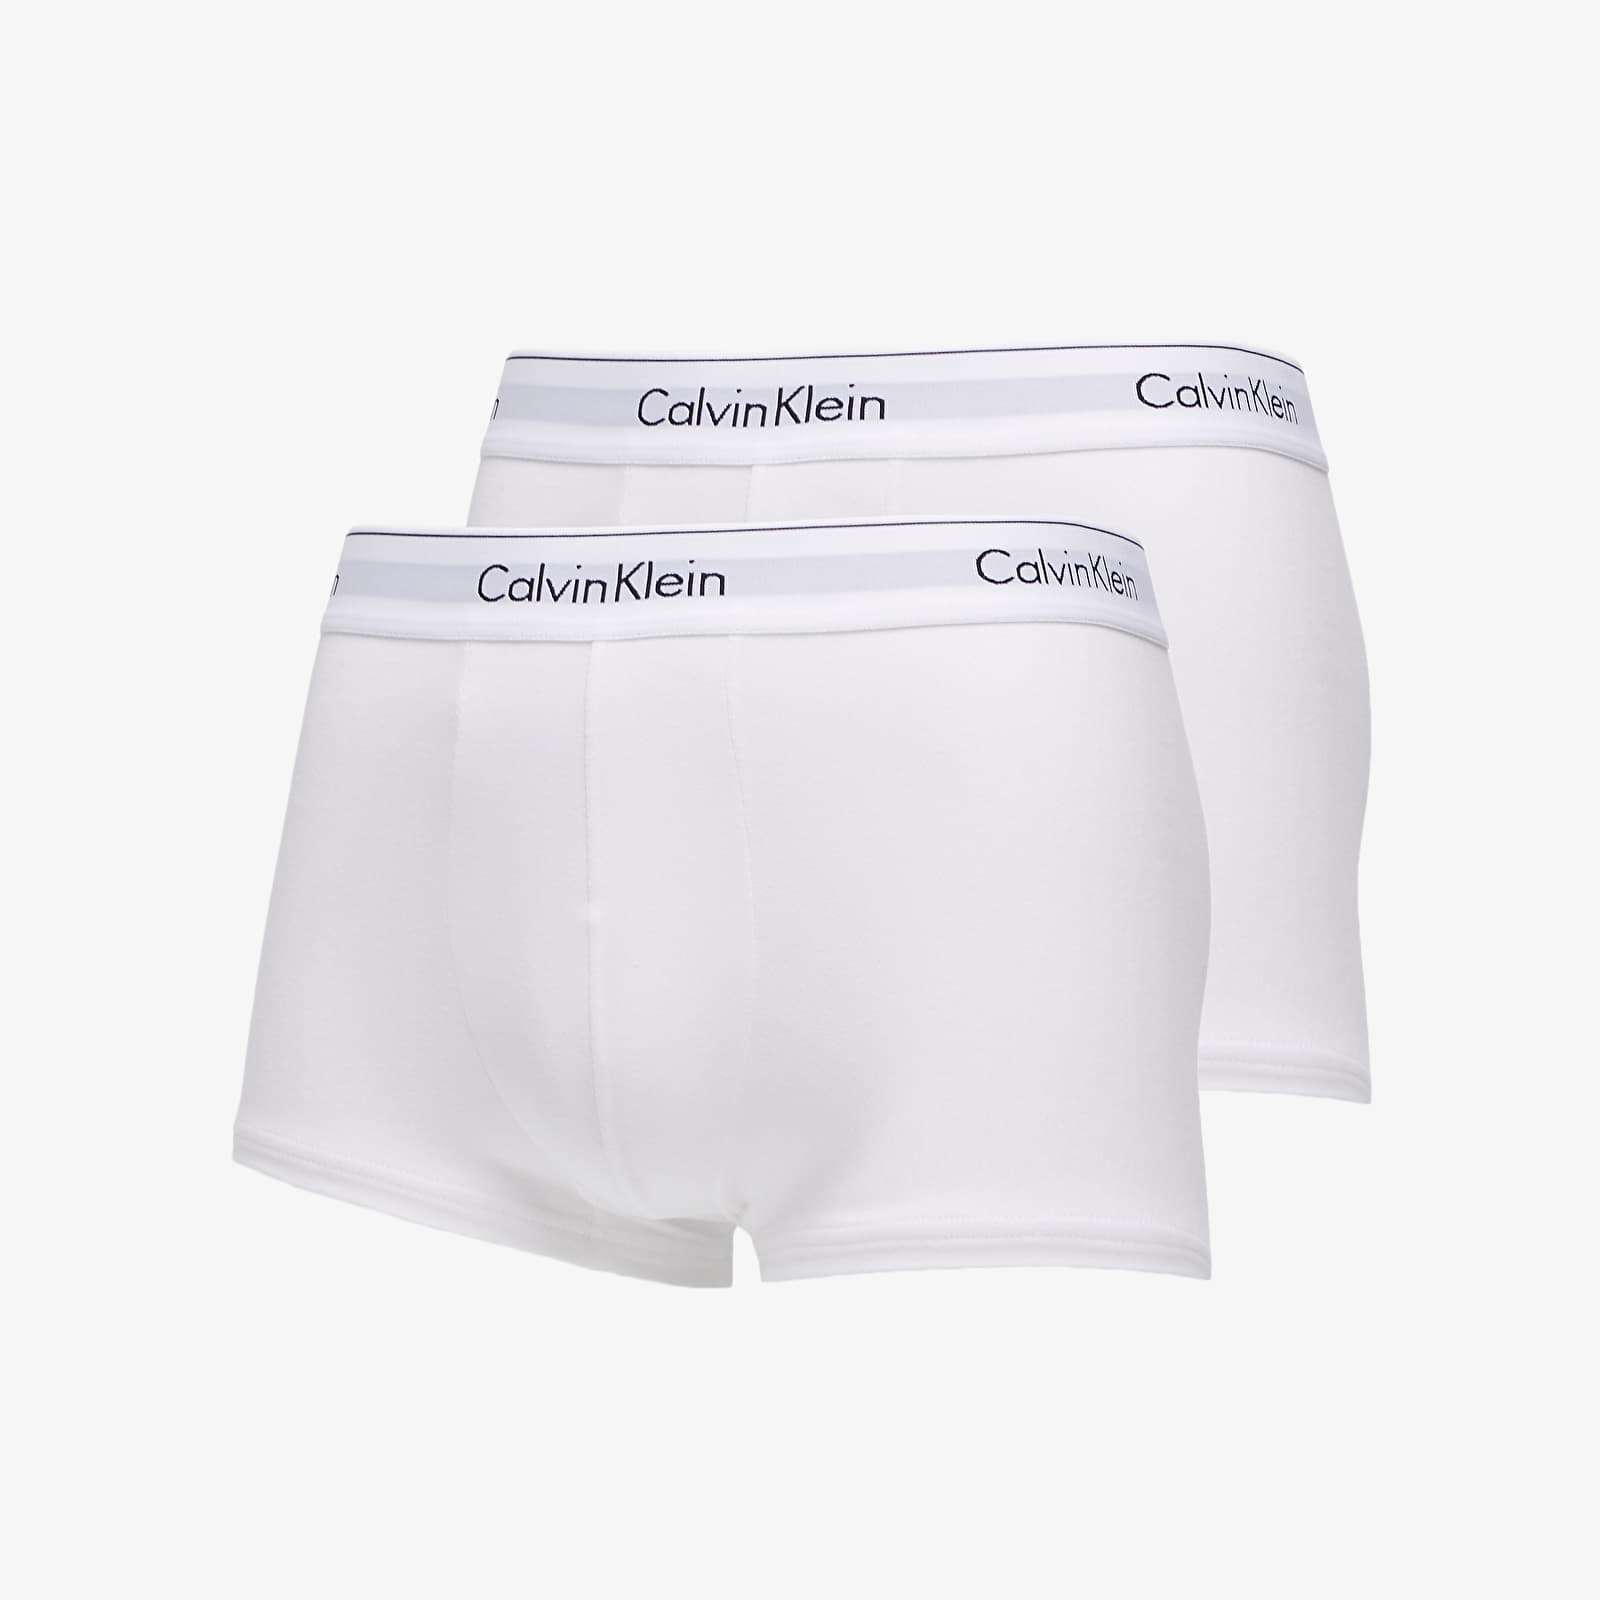 Boxer shorts Calvin Klein Trunks 2 Pack White